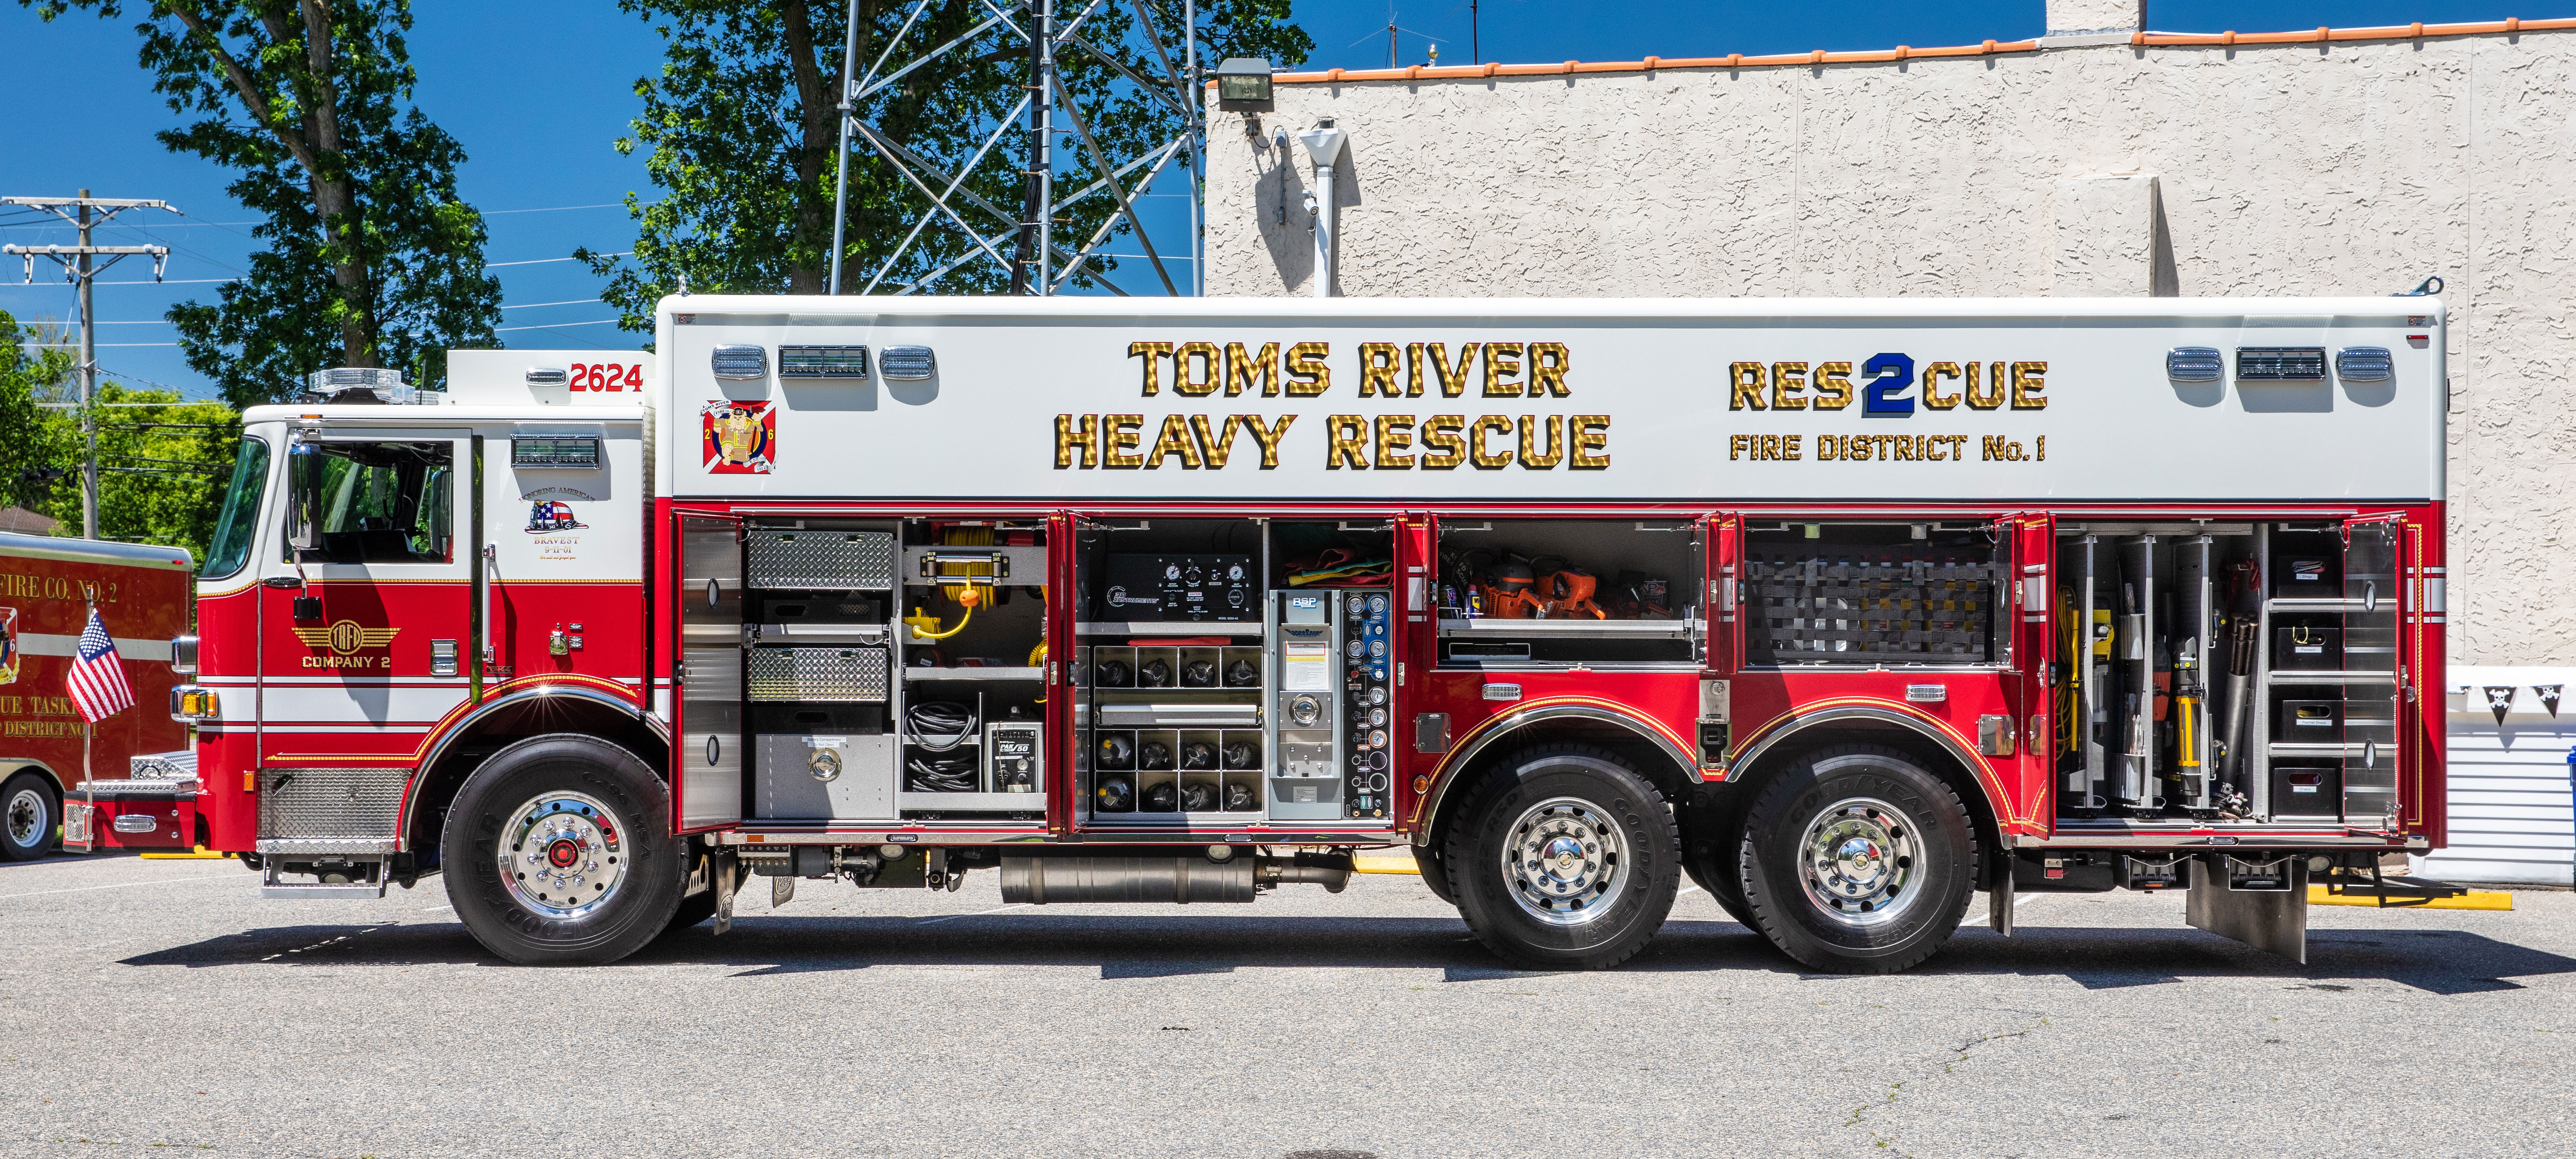 Toms River Township Fire District No. 1- Toms River, NJ